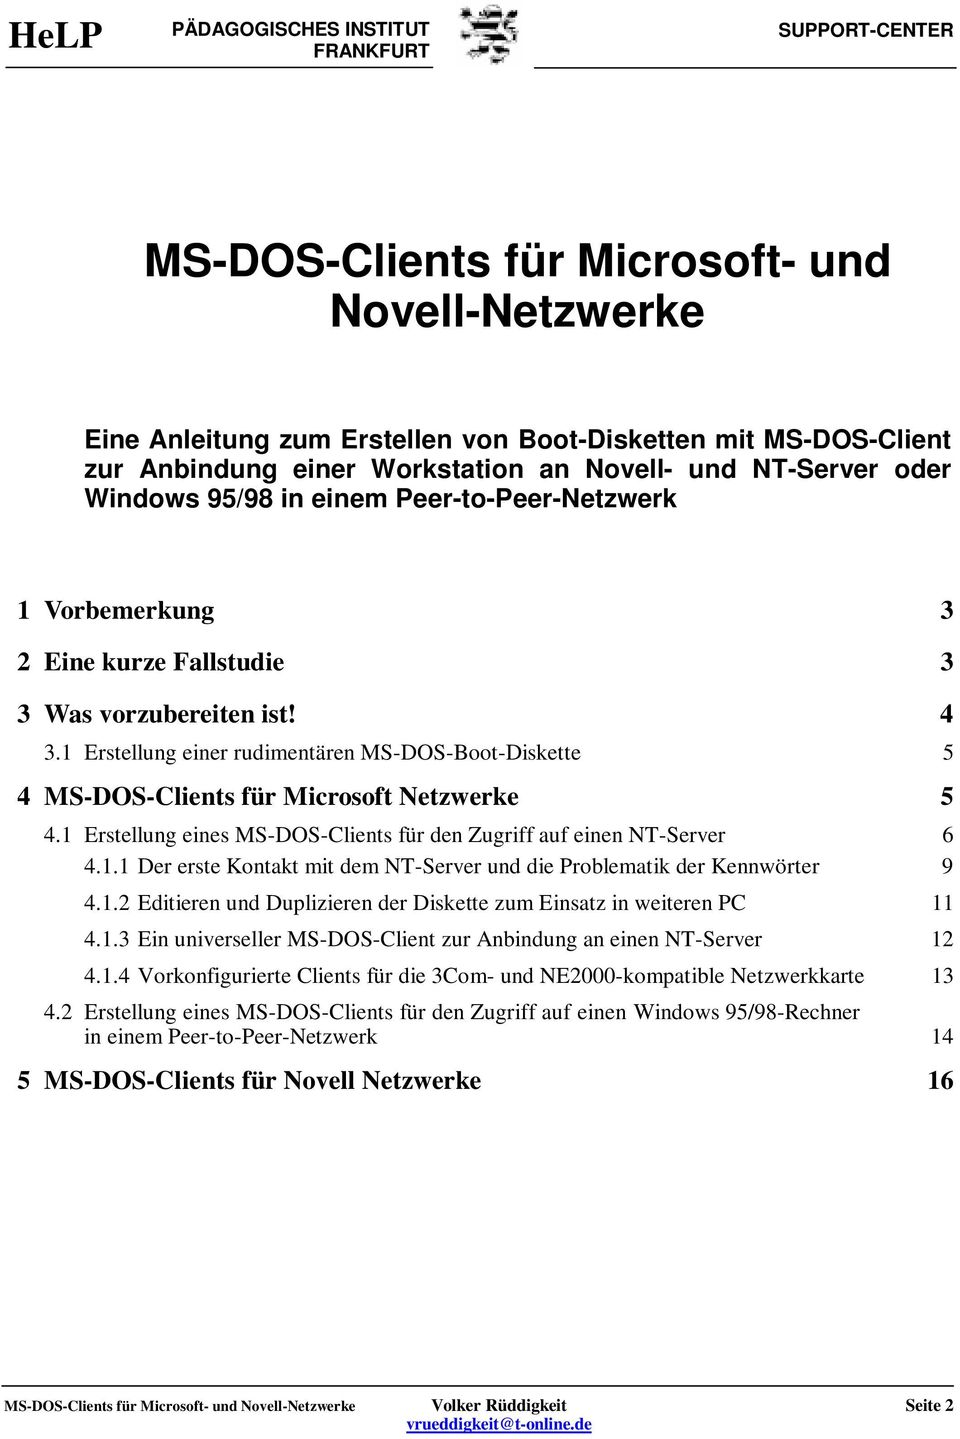 1 Erstellung eines MS-DOS-Clients für den Zugriff auf einen NT-Server 6 4.1.1 Der erste Kontakt mit dem NT-Server und die Problematik der Kennwörter 9 4.1.2 Editieren und Duplizieren der Diskette zum Einsatz in weiteren PC 11 4.